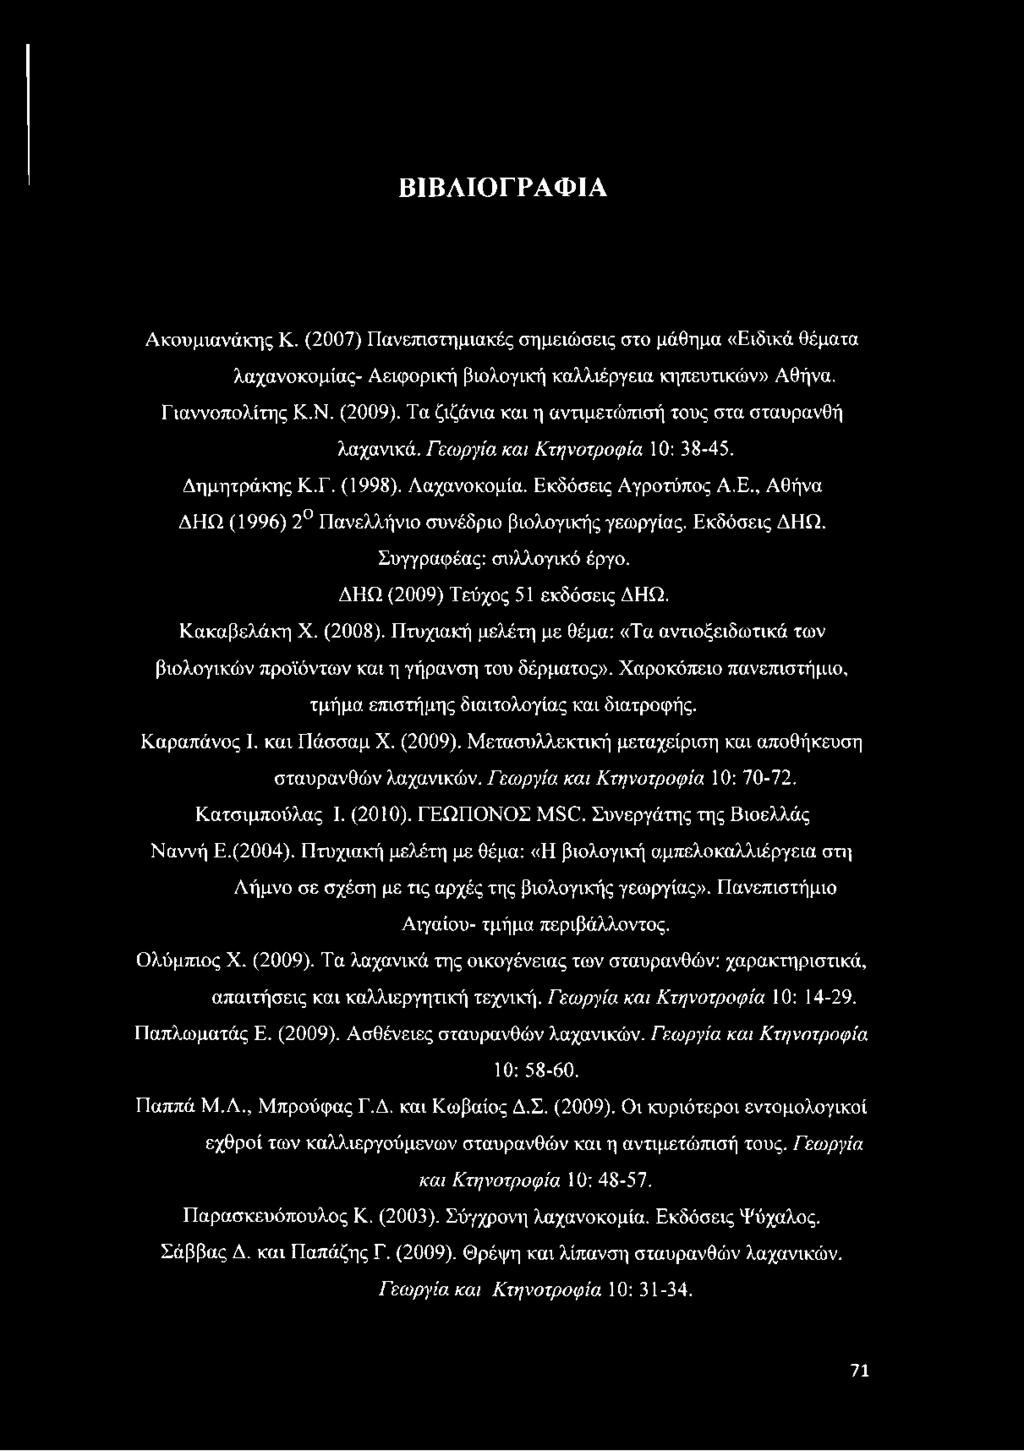 Εκδόσεις ΔΗΩ. Συγγραφέας: συλλογικό έργο. ΔΗΩ (2009) Τεύχος 51 εκδόσεις ΔΗΩ. Κακαβελάκη X. (2008). Πτυχιακή μελέτη με θέμα: «Τα αντιοξειδωτικά των βιολογικών προϊόντων και η γήρανση του δέρματος».